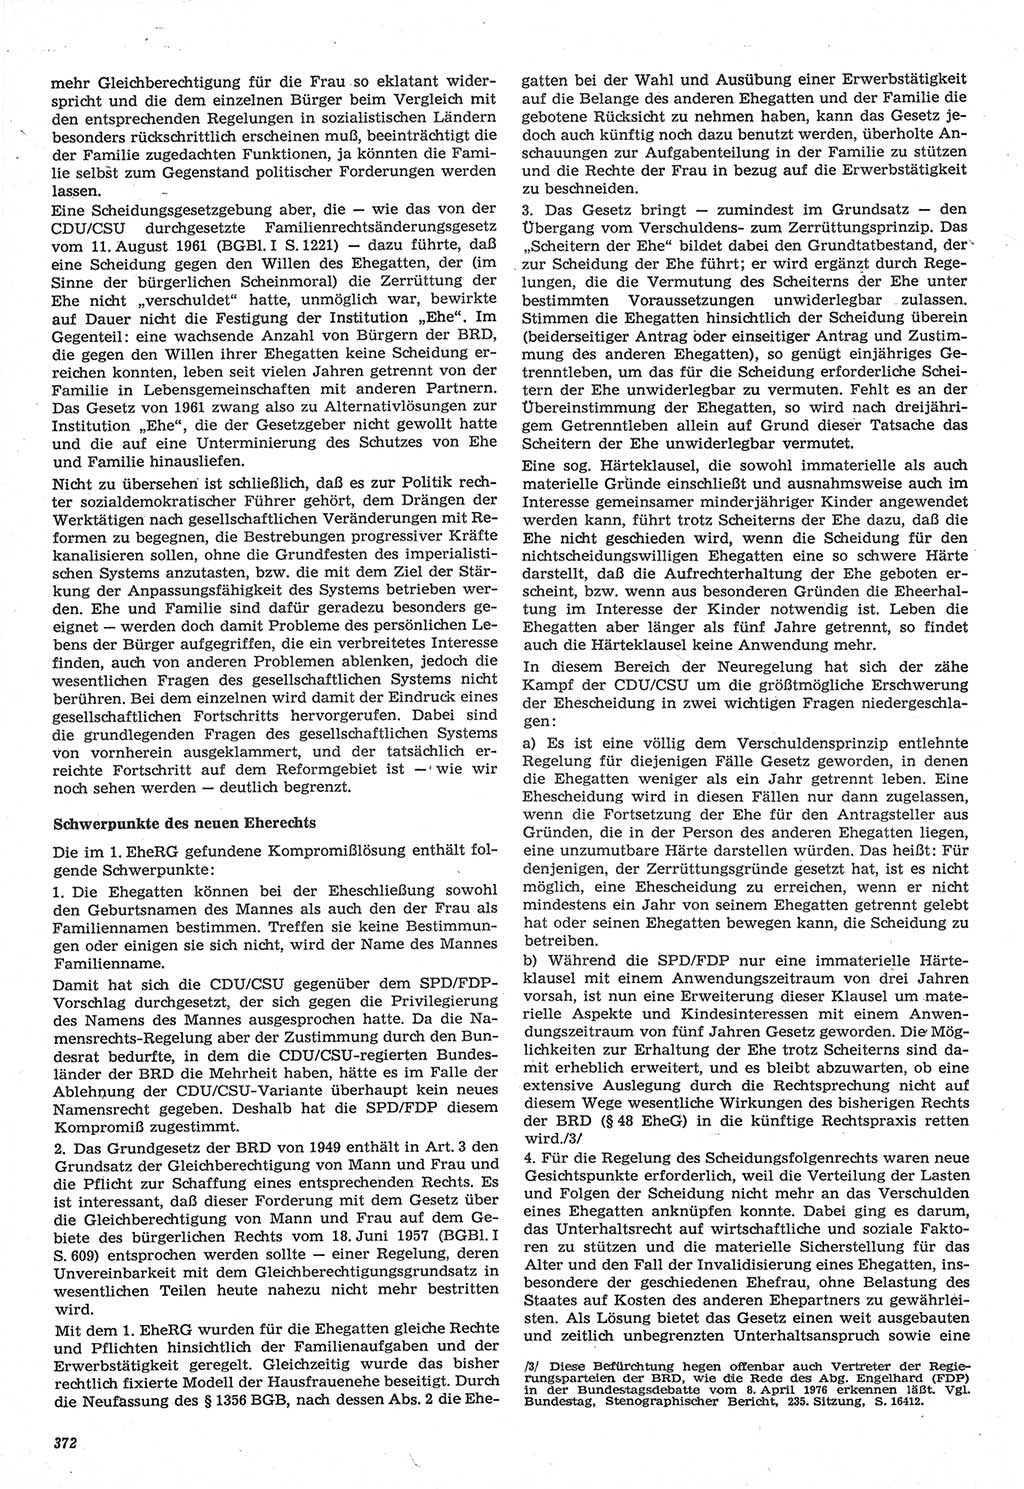 Neue Justiz (NJ), Zeitschrift für Recht und Rechtswissenschaft-Zeitschrift, sozialistisches Recht und Gesetzlichkeit, 31. Jahrgang 1977, Seite 372 (NJ DDR 1977, S. 372)